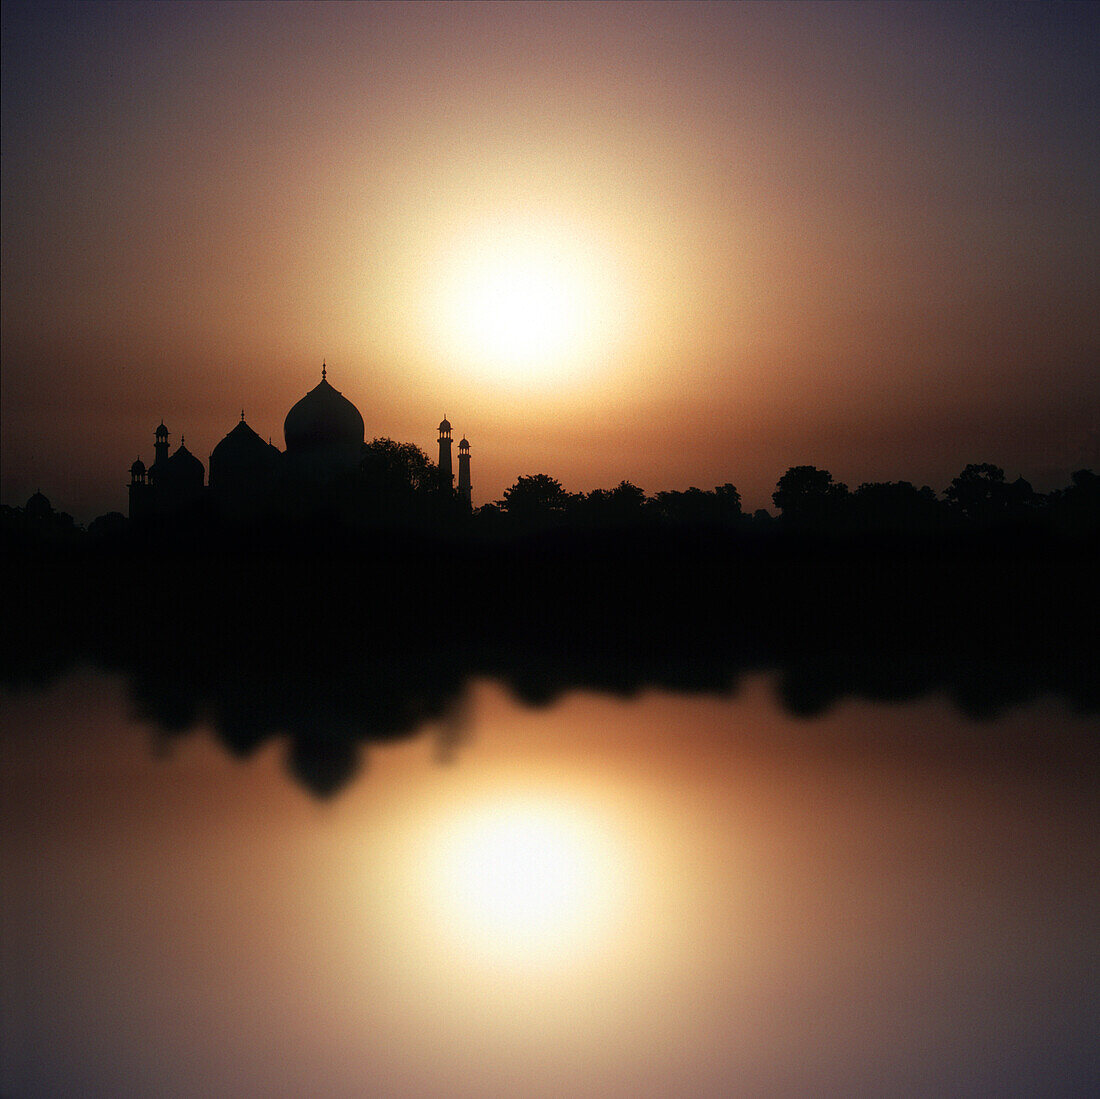 Das Taj Mahal spiegelt sich im Fluss bei Sonnenuntergang, Agra, Uttar Pradesh, Indien, Asien